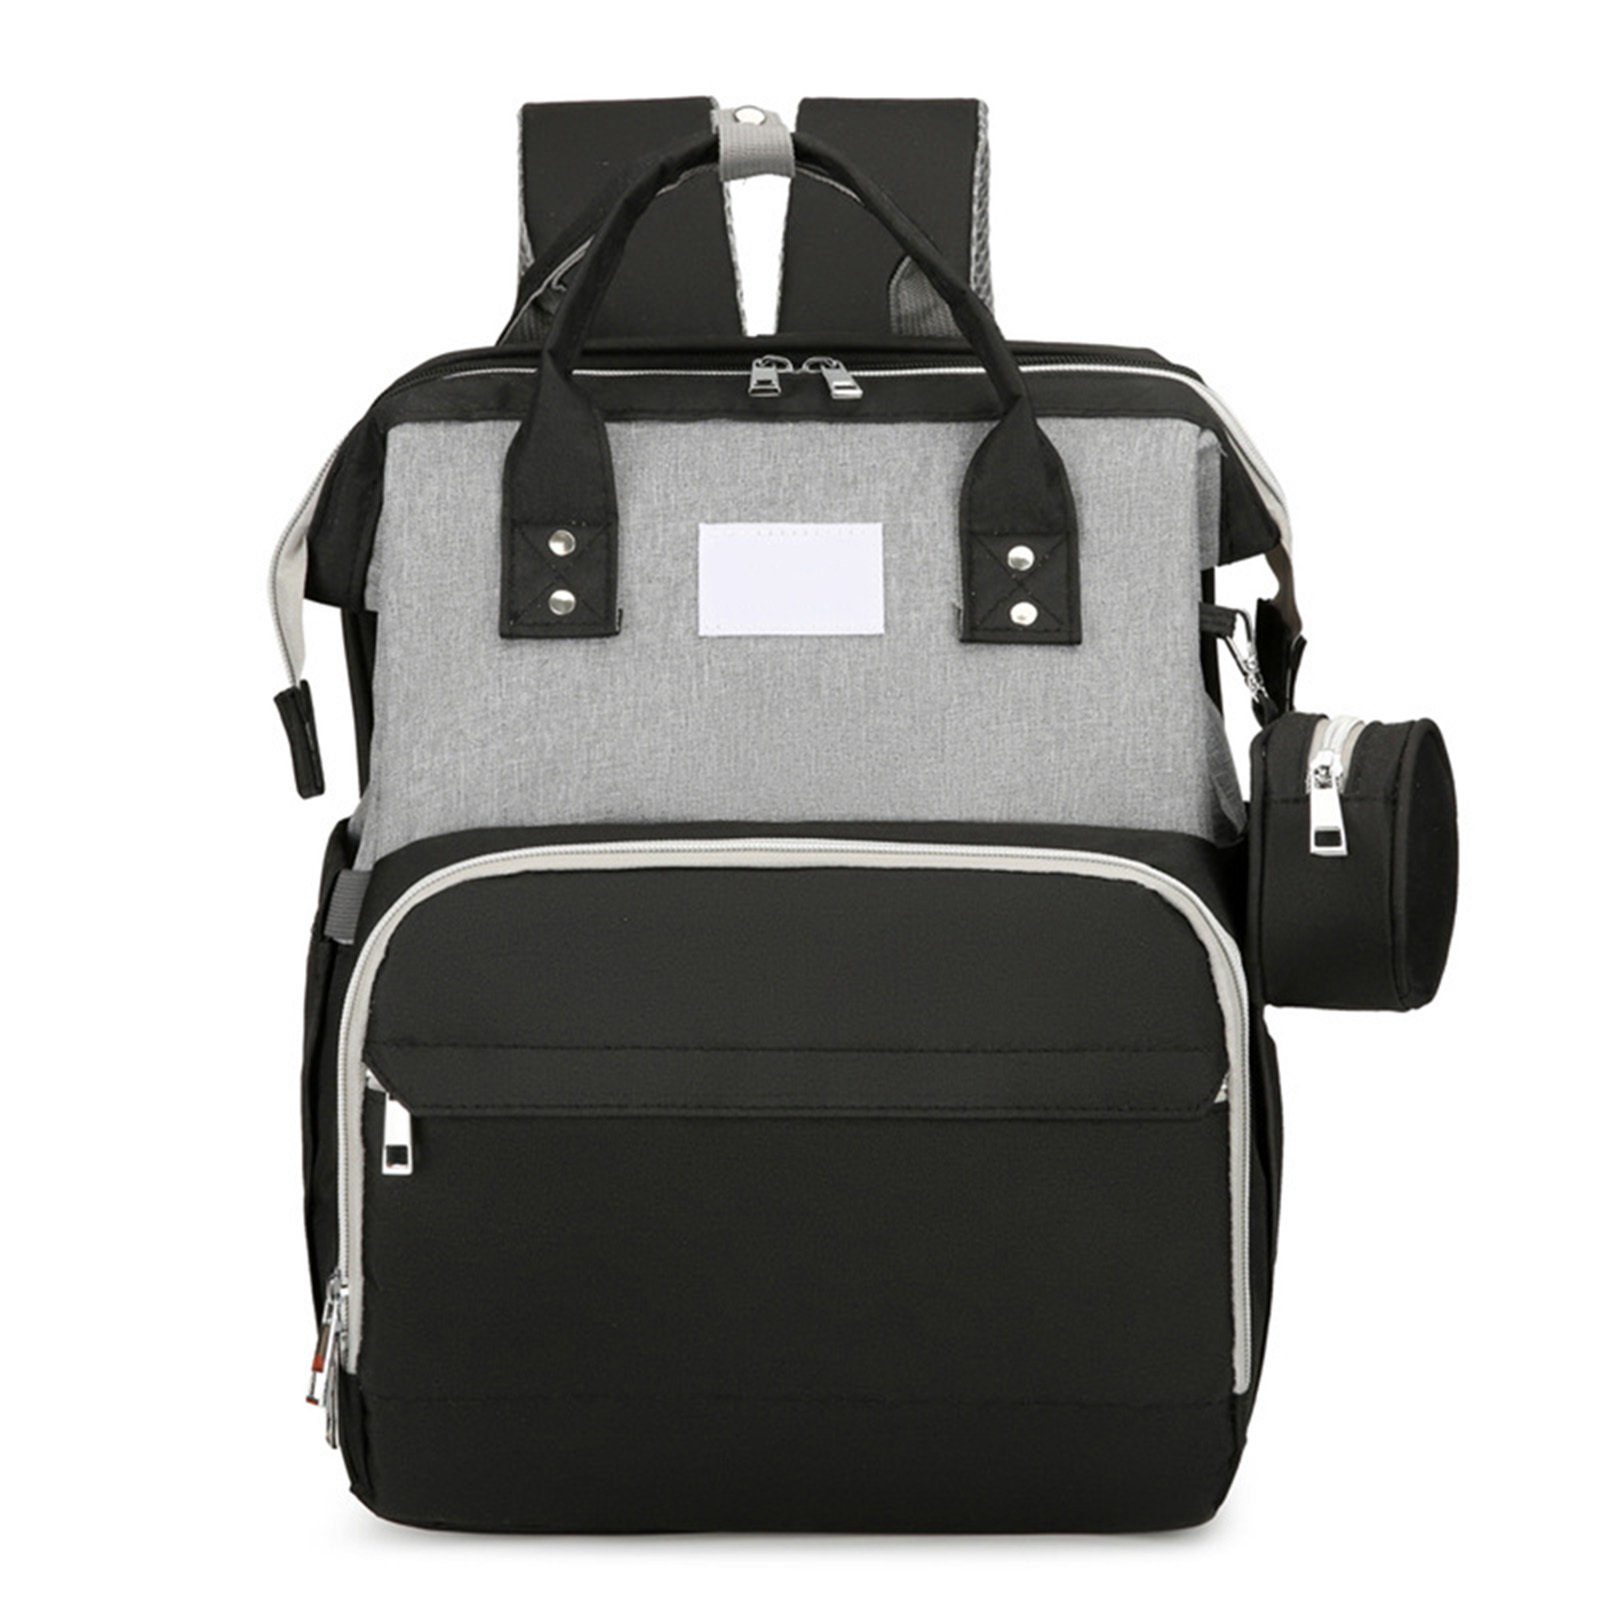 Blusmart Wickeltasche Tragbare Wickeltasche Mit Reißverschluss, Mehrzweck-Mutterrucksack black gray